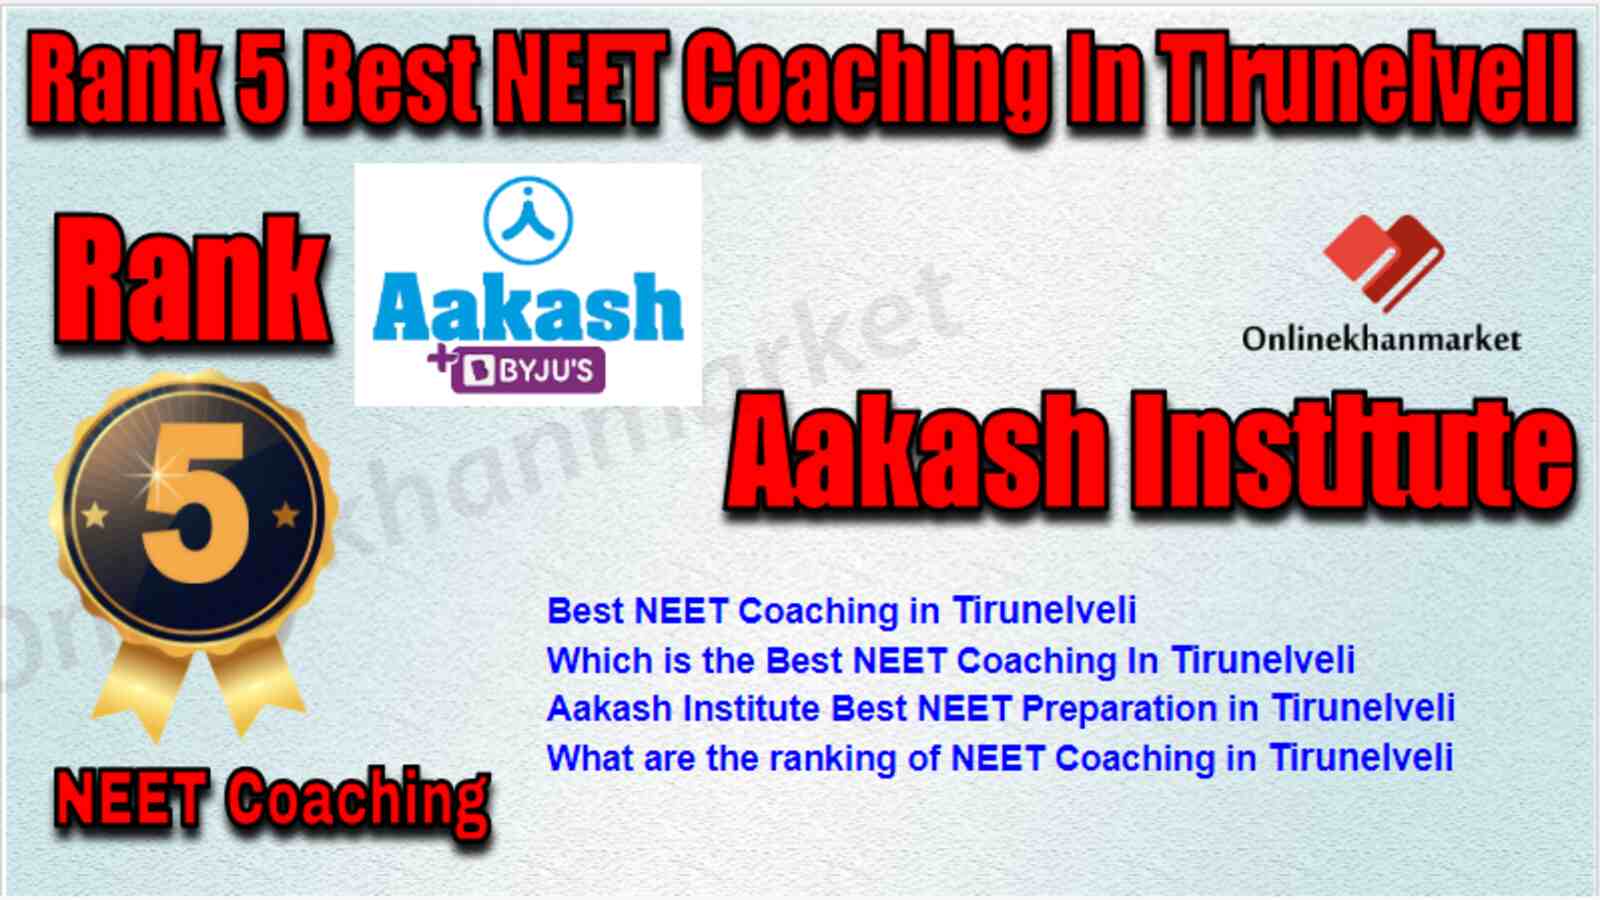 Rank 5 Best NEET Coaching in Tirunelveli